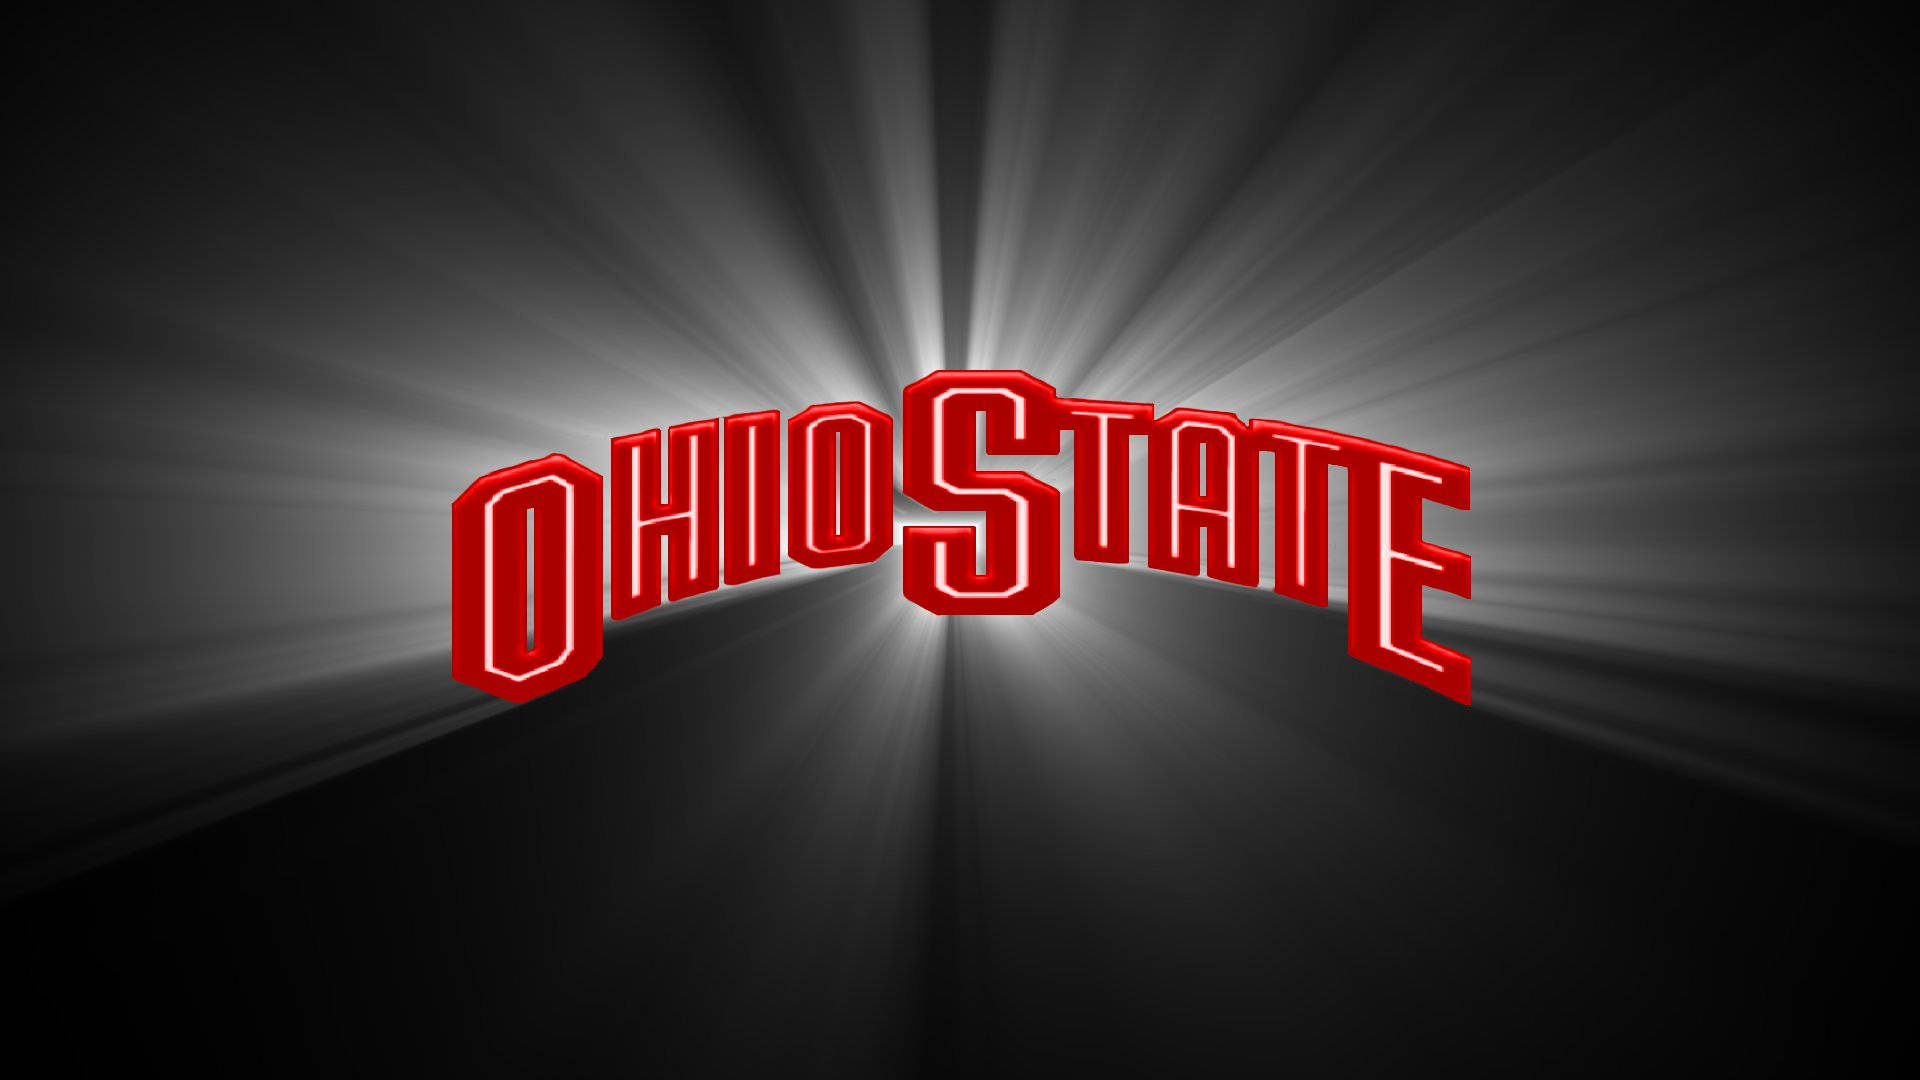 Ohio State University Shining Logo Background